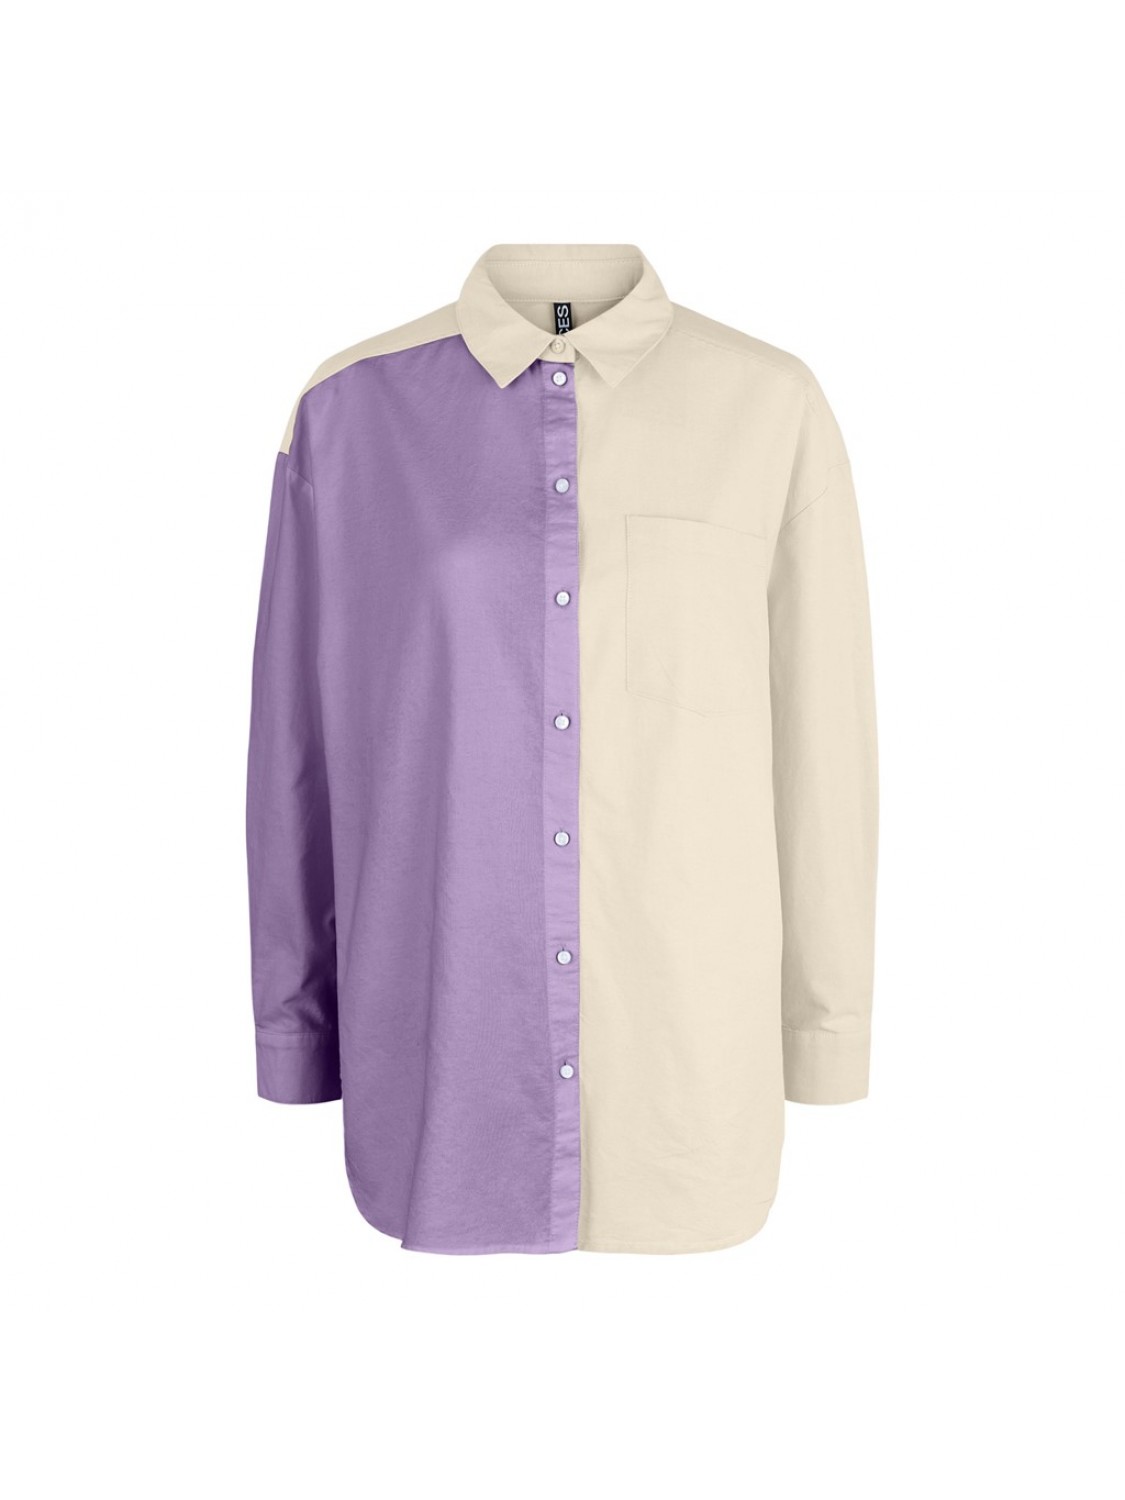 Camisa bicolor lavanda